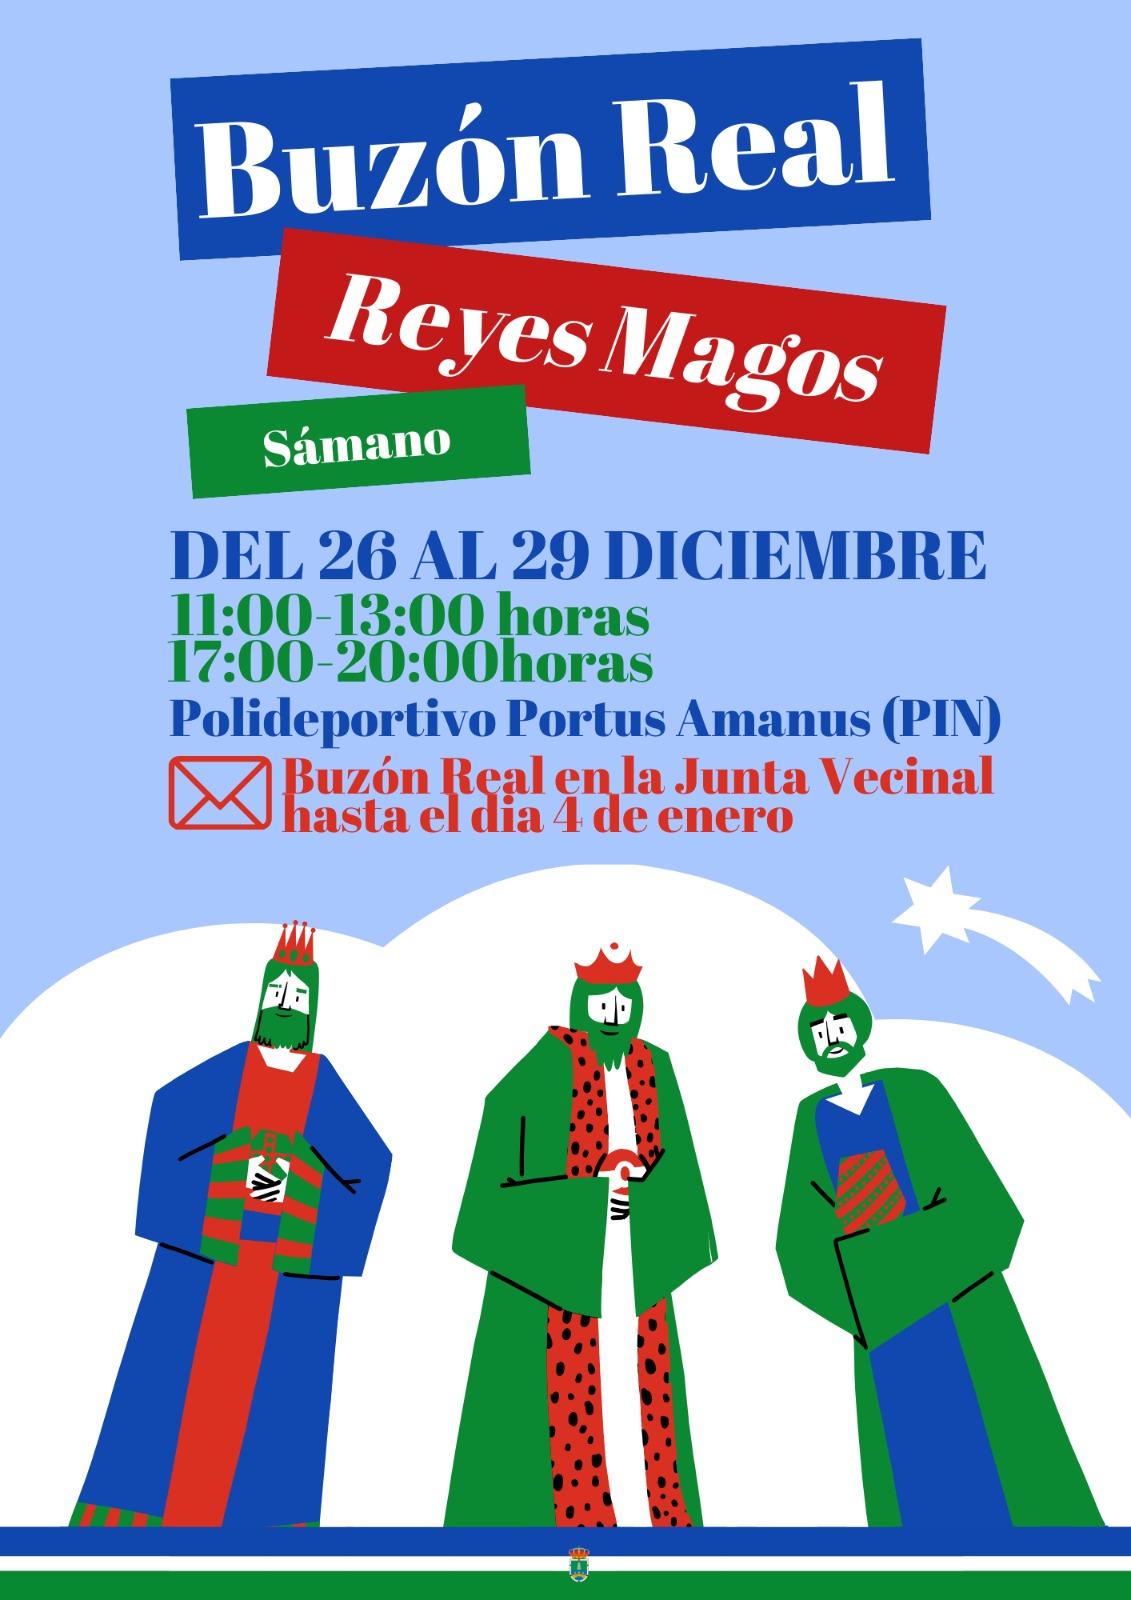 Buzón Real: Reyes Magos y PIN 